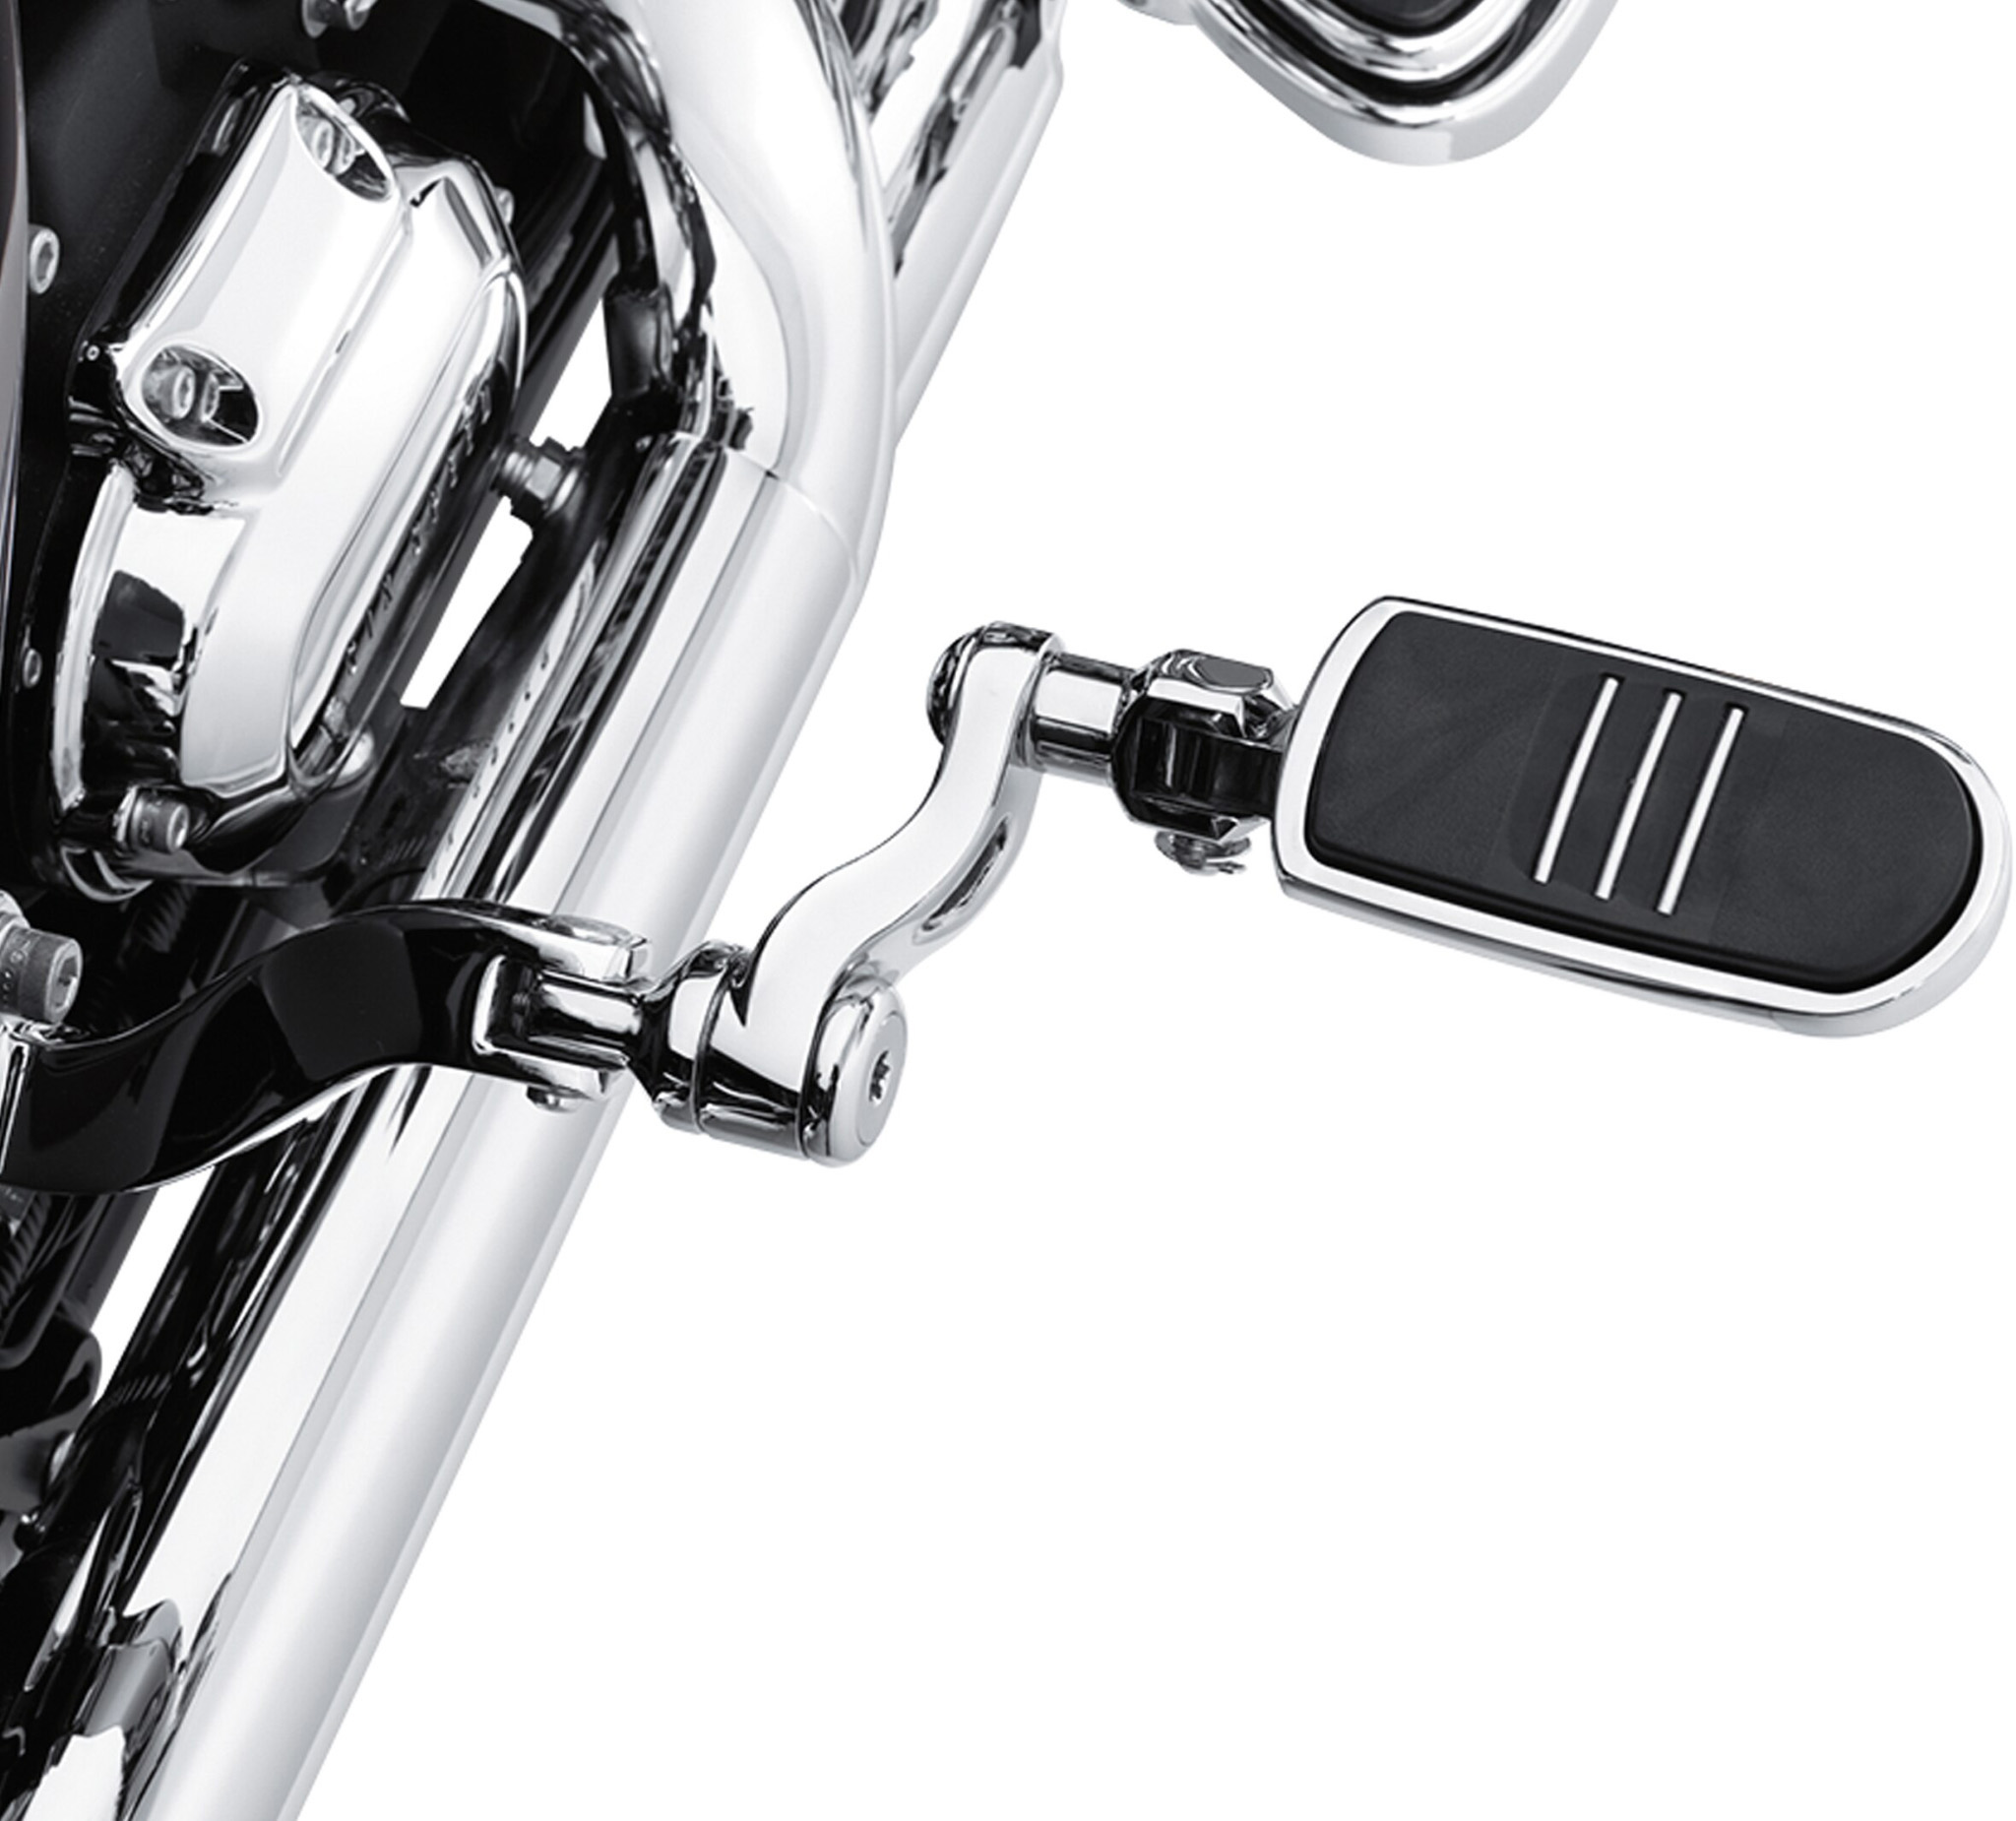 Adjustable Passenger Footpeg Mount Kit Chrome for Harley Davidson by V-Twin 